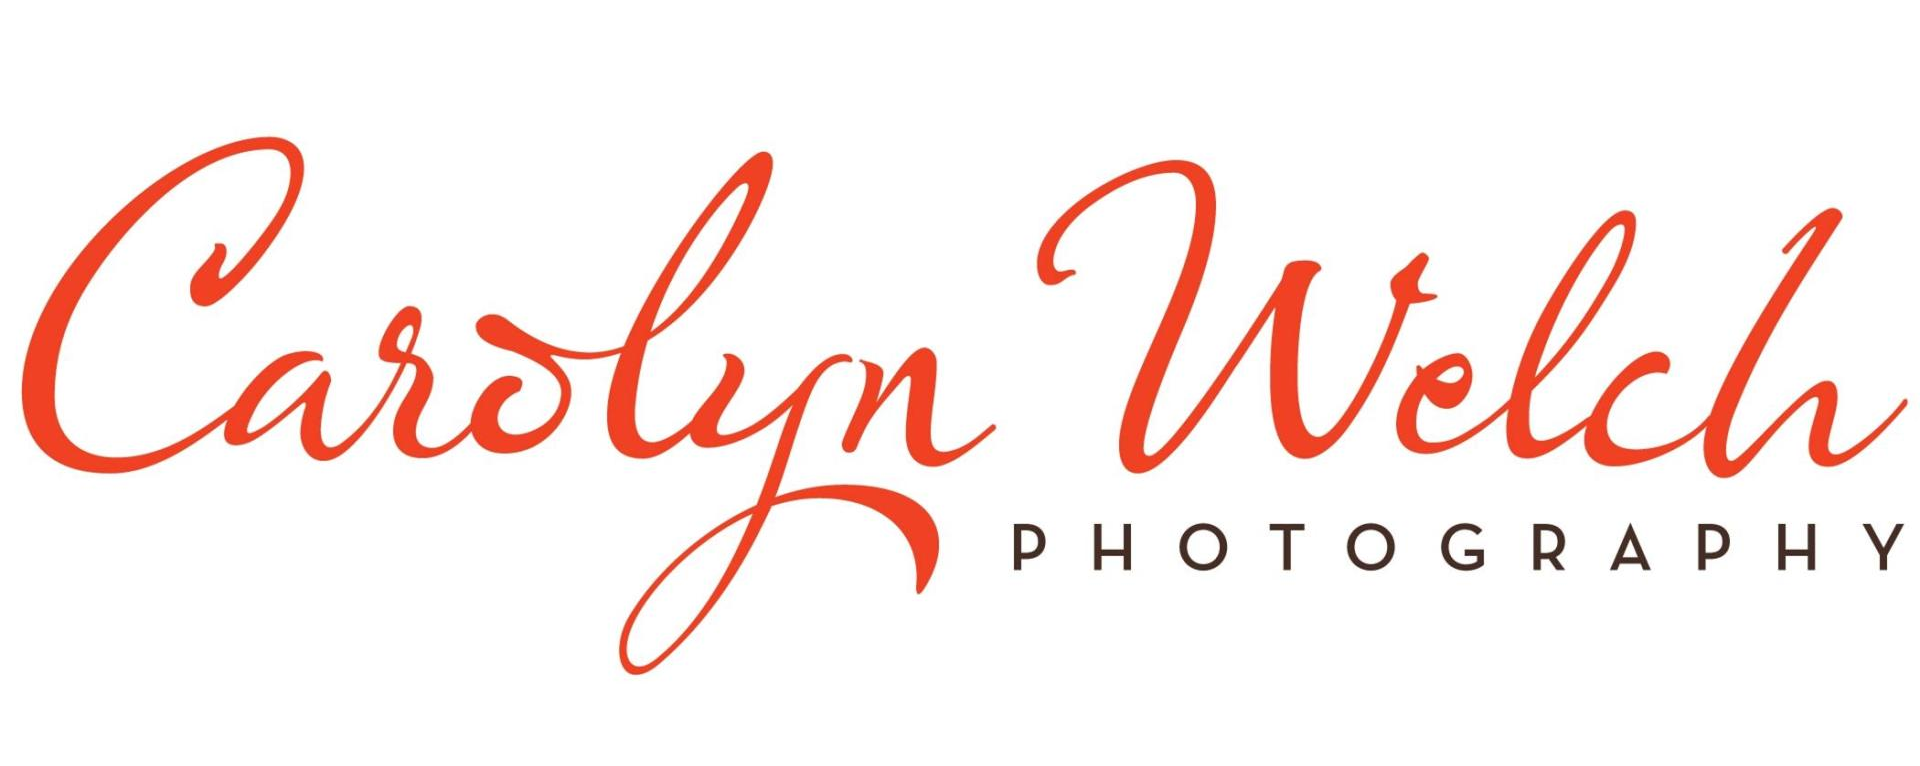 carolyn welch photography logo